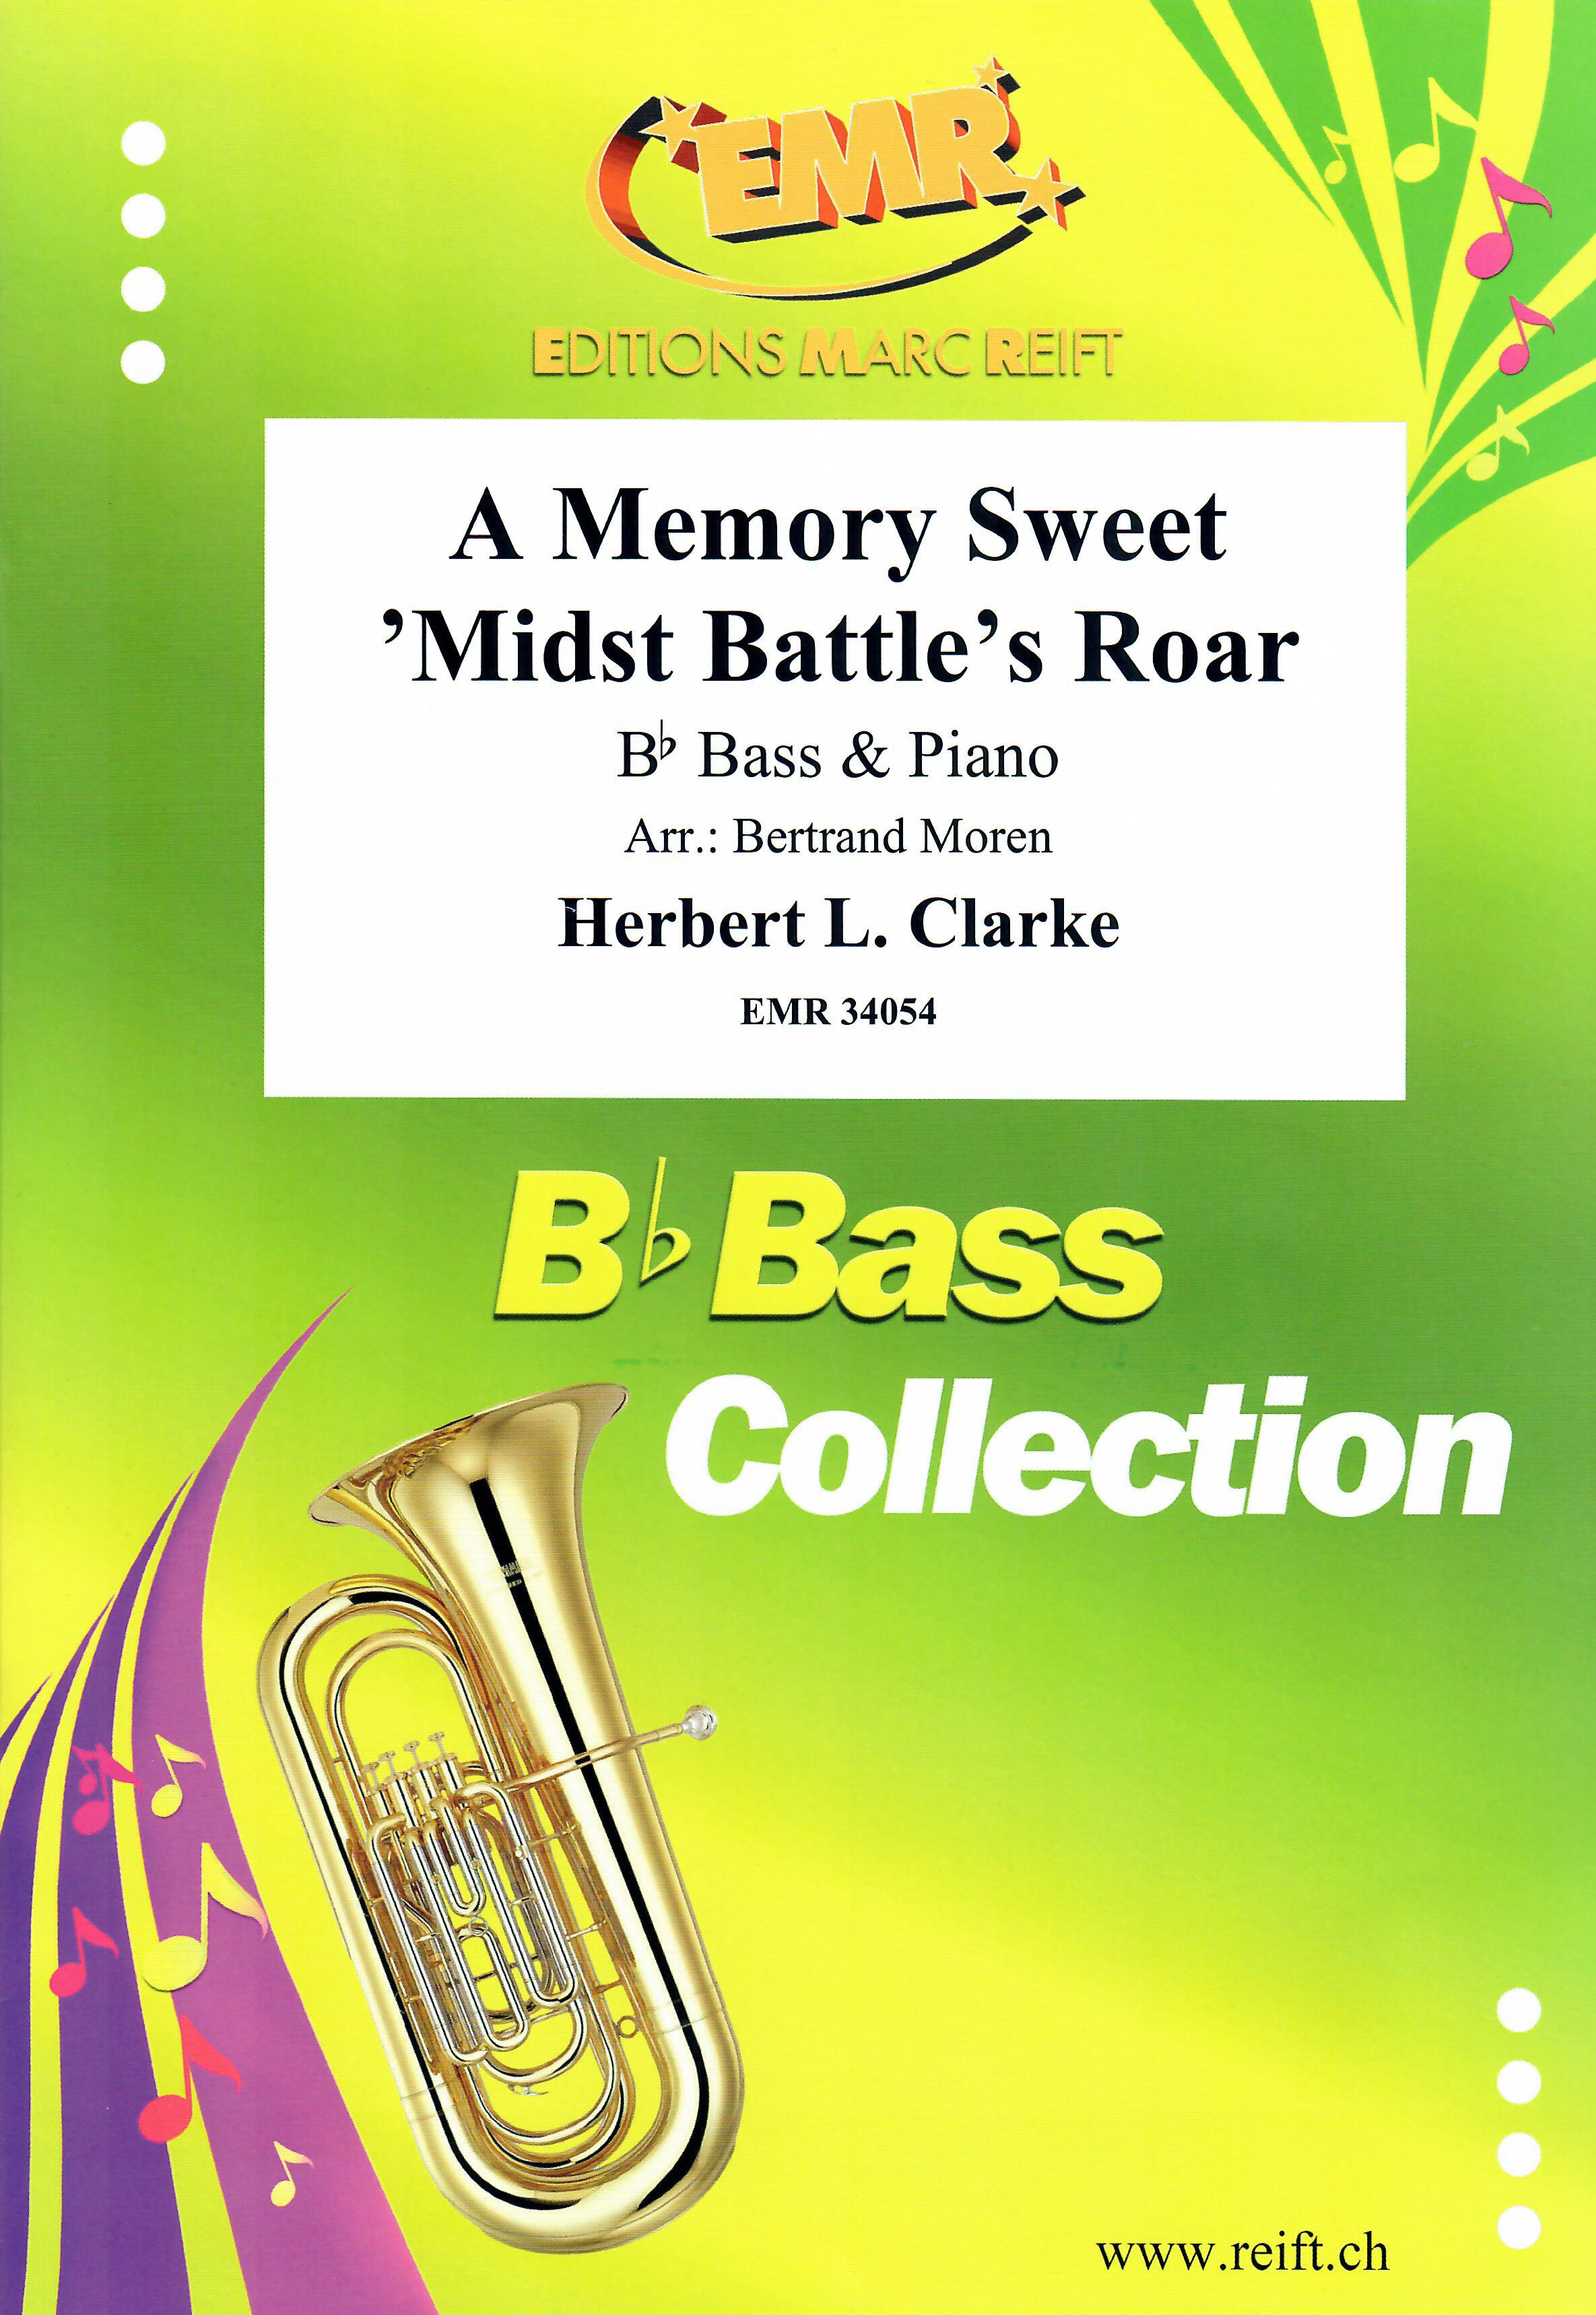 A MEMORY SWEET 'MIDST BATTLE'S ROAR, SOLOS - E♭. Bass